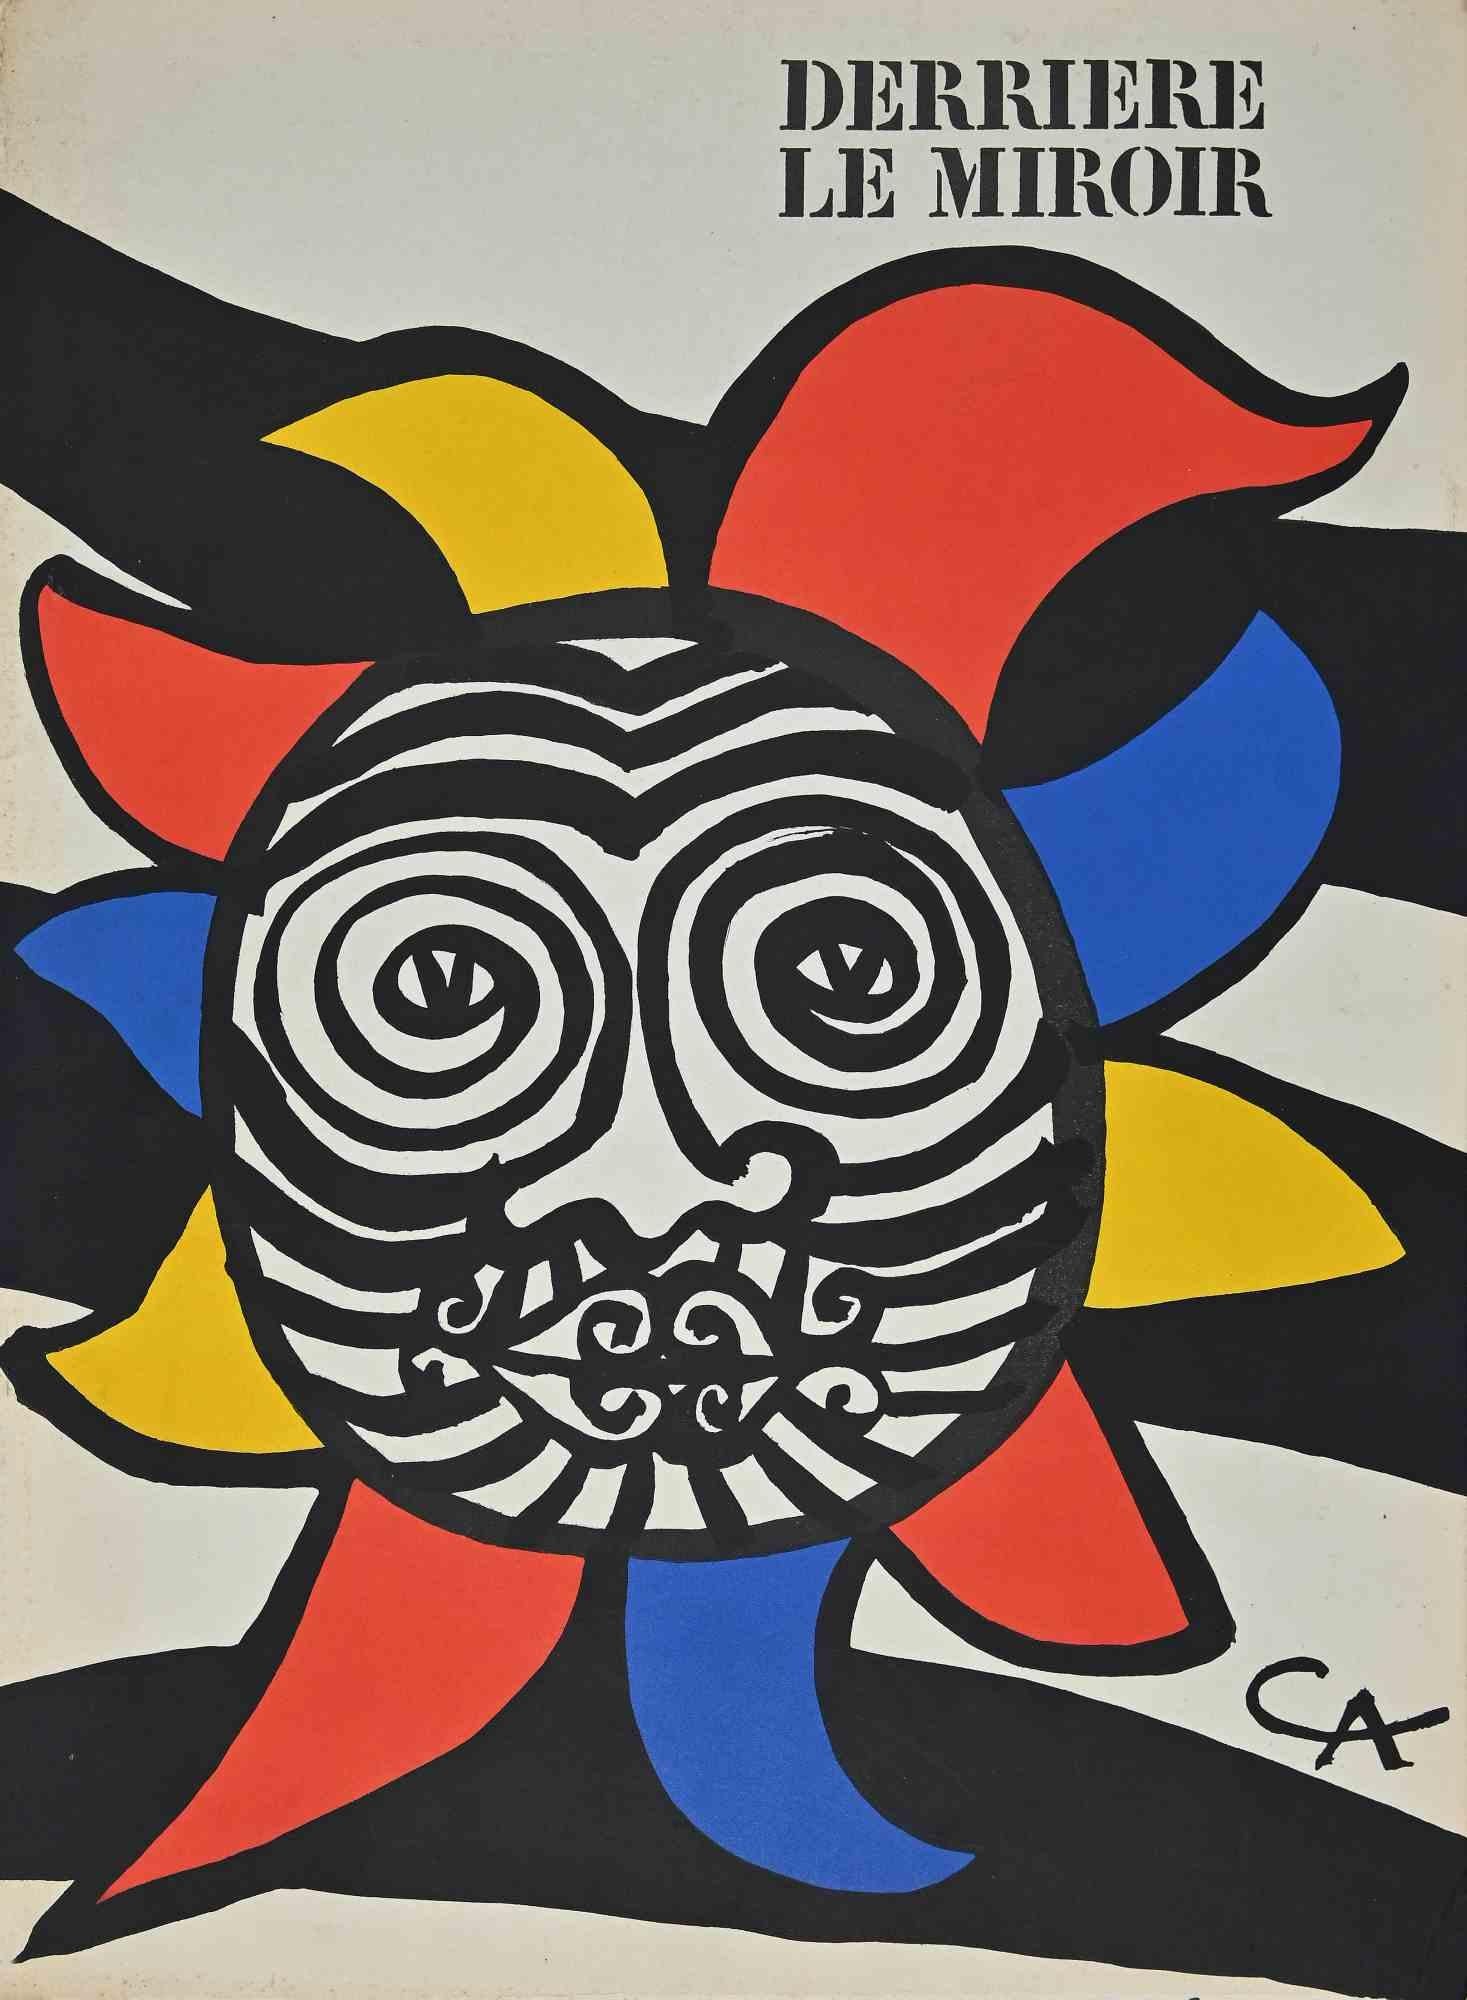 Die Sonne ist ein Original-Kunstwerk von Alexander Calder aus dem Jahr 1966.

Original mischkolorierte Lithographie. 

Das Kunstwerk war der Umschlagentwurf für die Kunstzeitschrift "Derriere Le Miroir" Nr. 156 und ist auf der Platte monogrammiert.